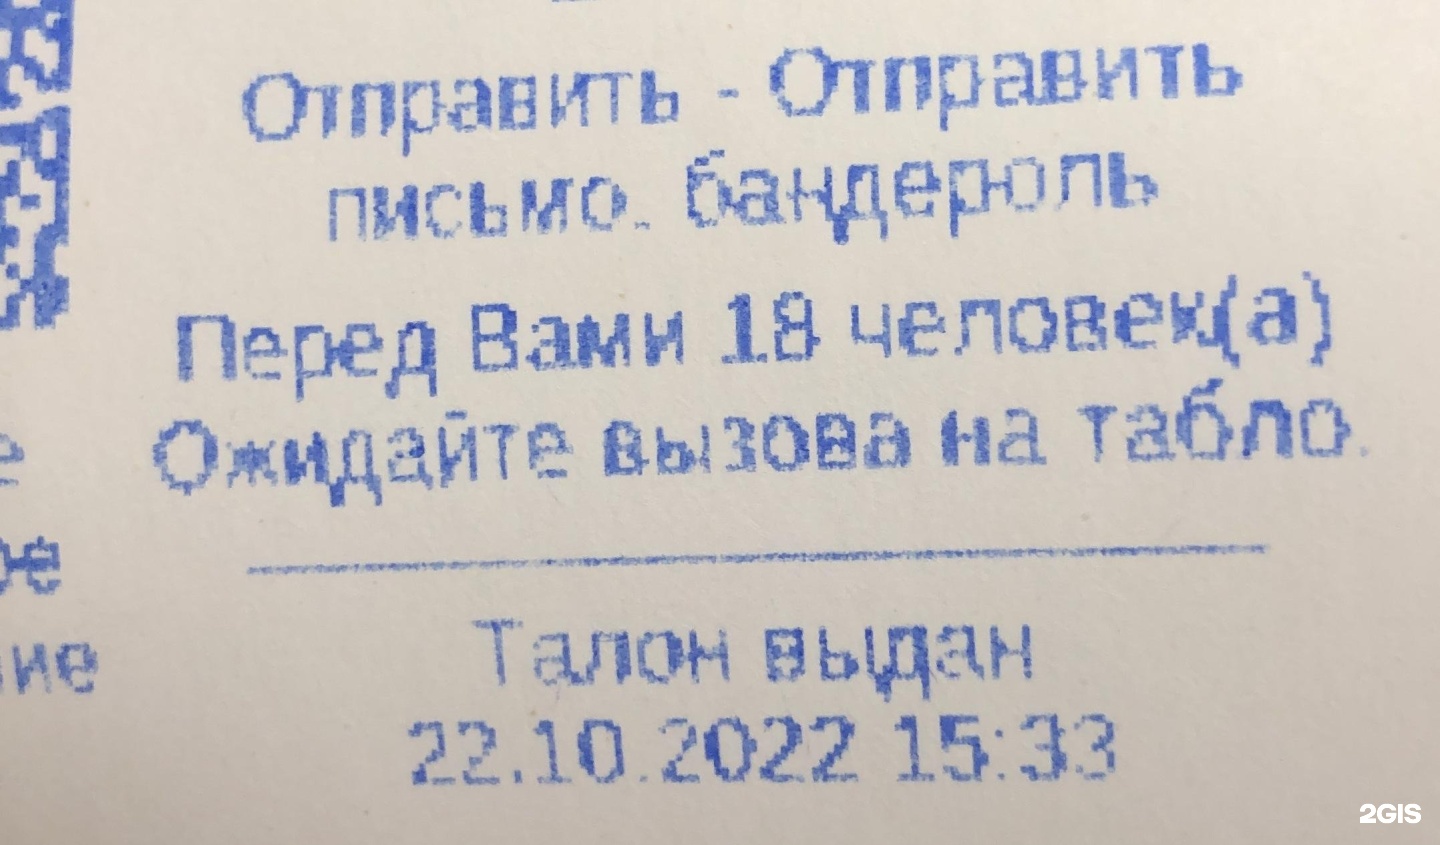 Отправить телеграмму по телефону почта россии фото 60